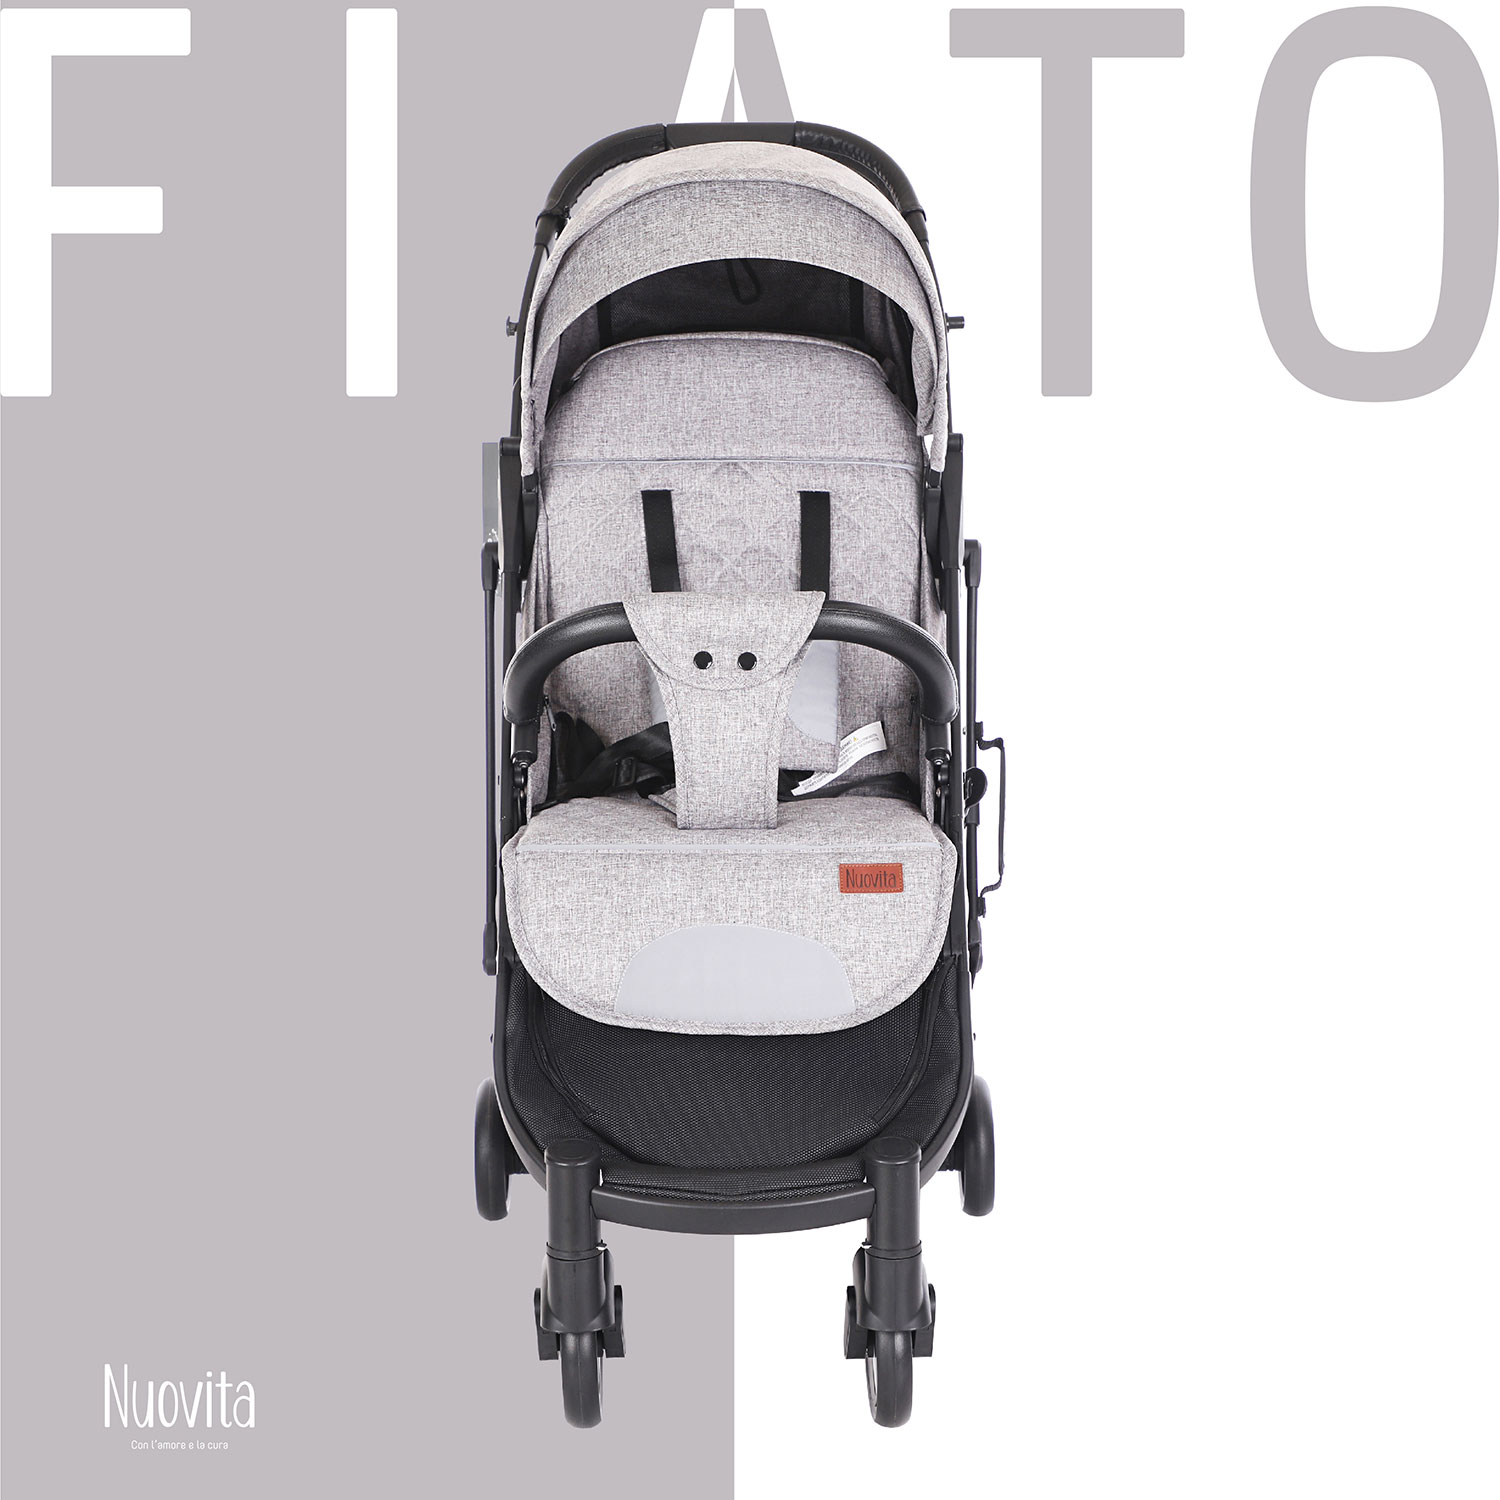 Прогулочная коляска Nuovita Fiato (Grigio, Nero / Серый, черный) прогулочная коляска nuovita fiato